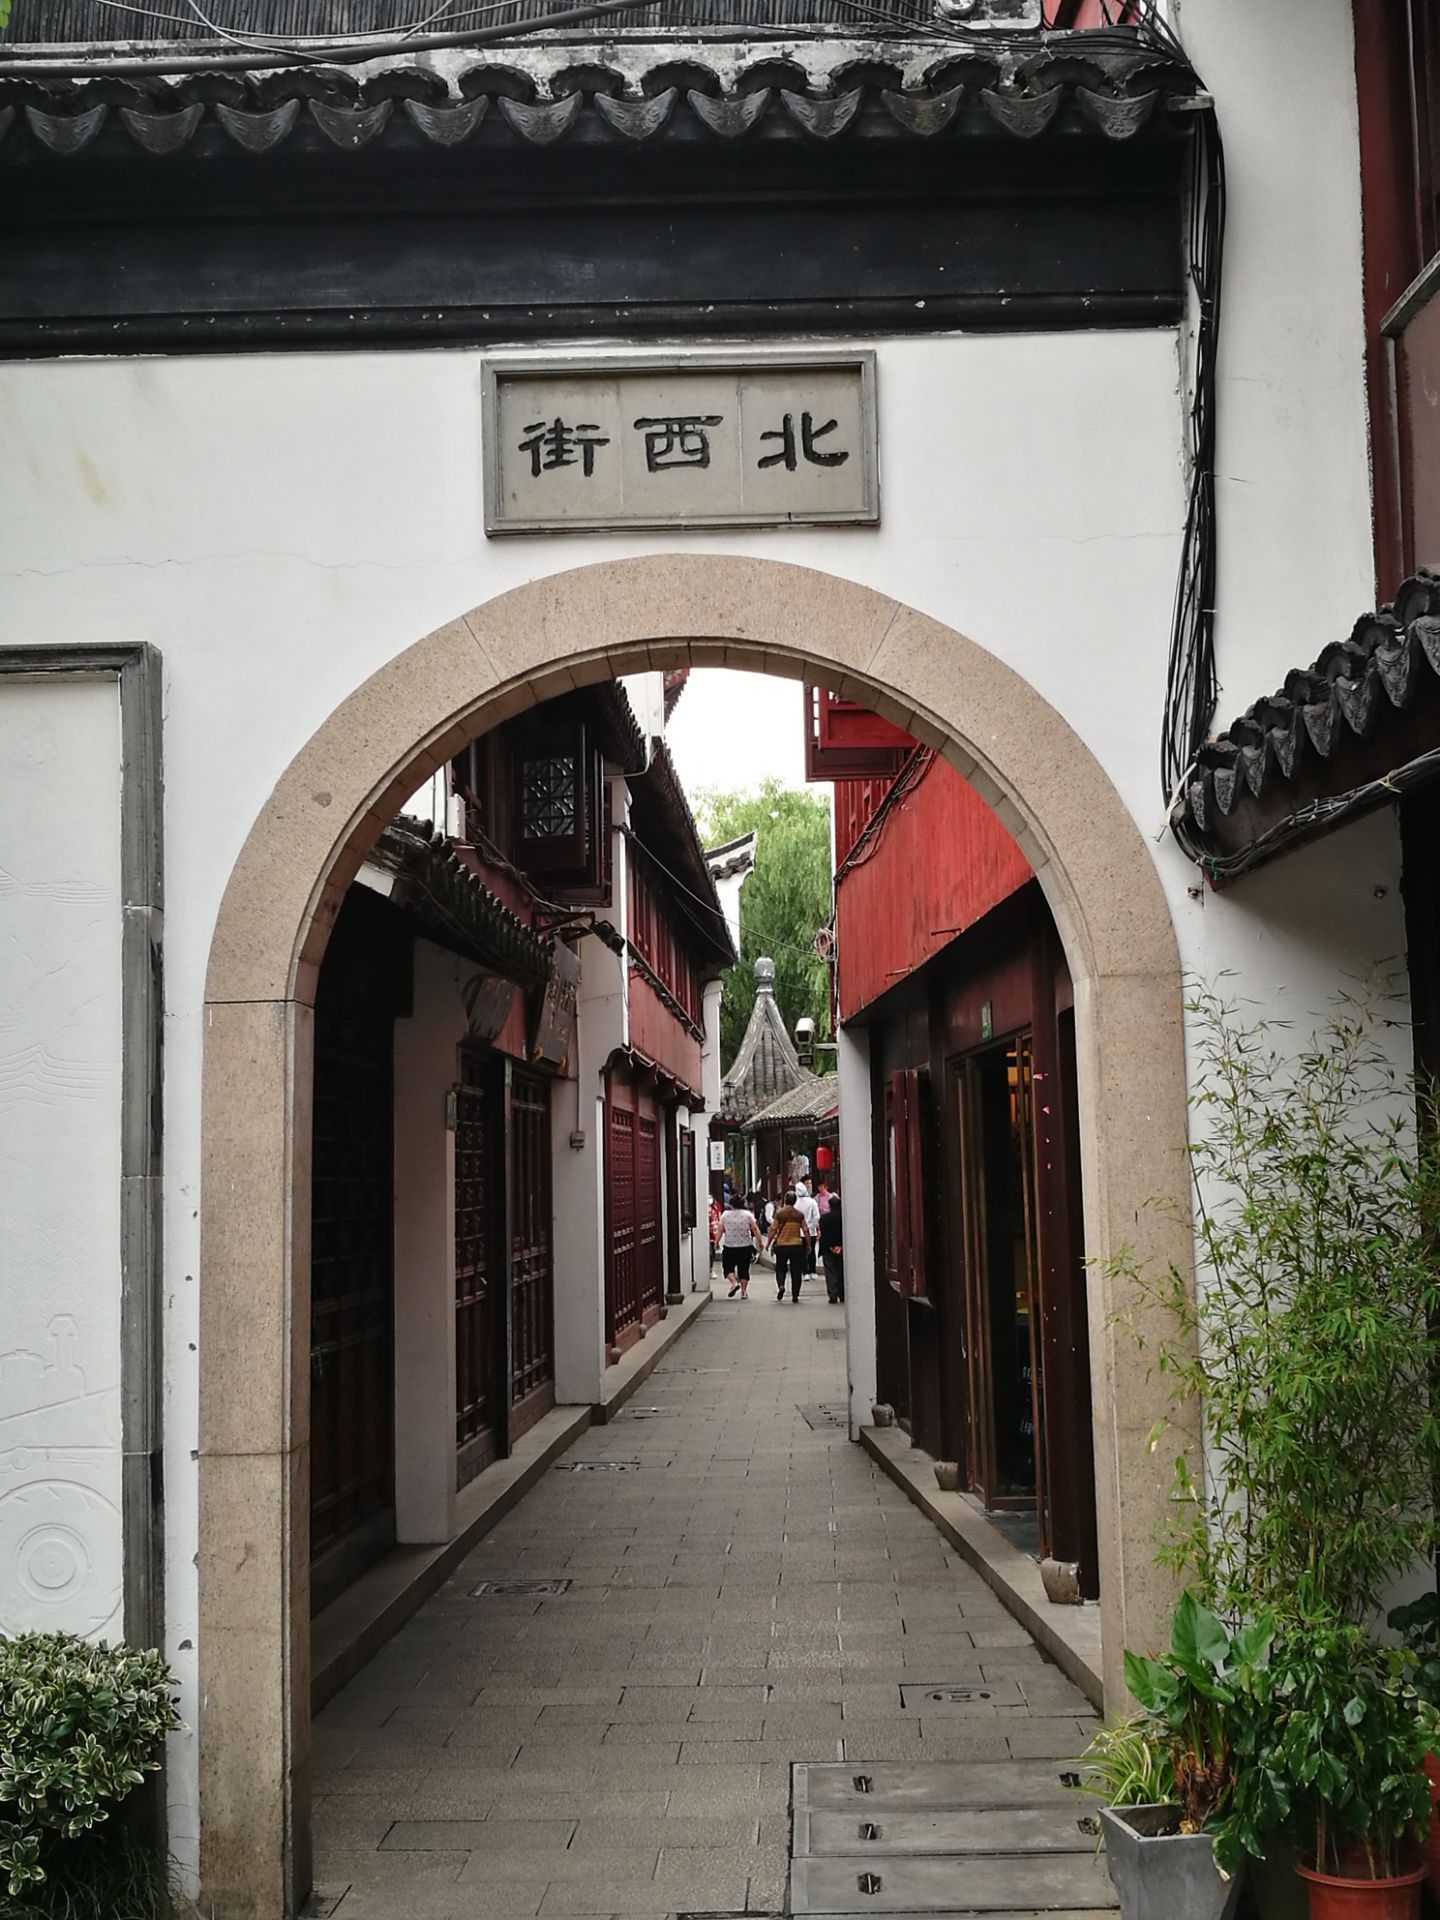 【携程攻略】上海七宝老街景点,七宝老街，算不上古镇老街，只能说是仿真街坊。“南七宝寺”是否算上…